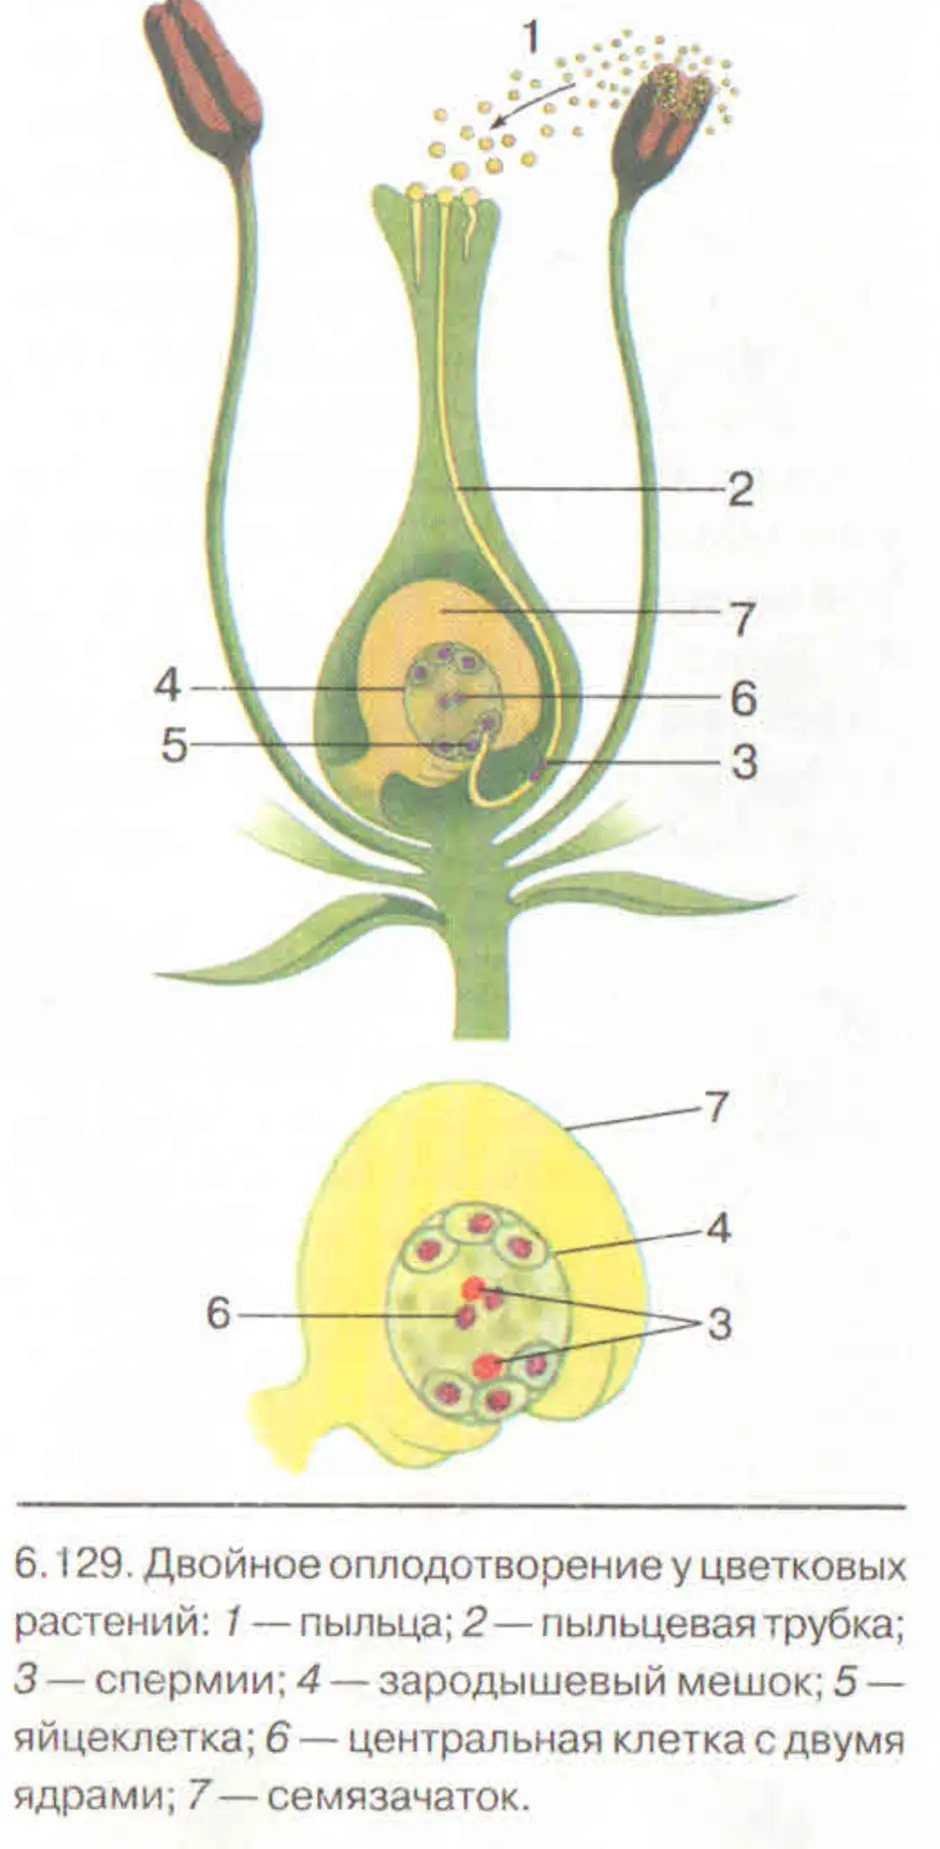 У покрытосеменных происходит двойное оплодотворение. Схема двойного оплодотворения у растений. Схема оплодотворения у цветковых растений. Схема двойного оплодотворения у покрытосеменных растений. Строение цветка и двойное оплодотворение у цветковых растений.